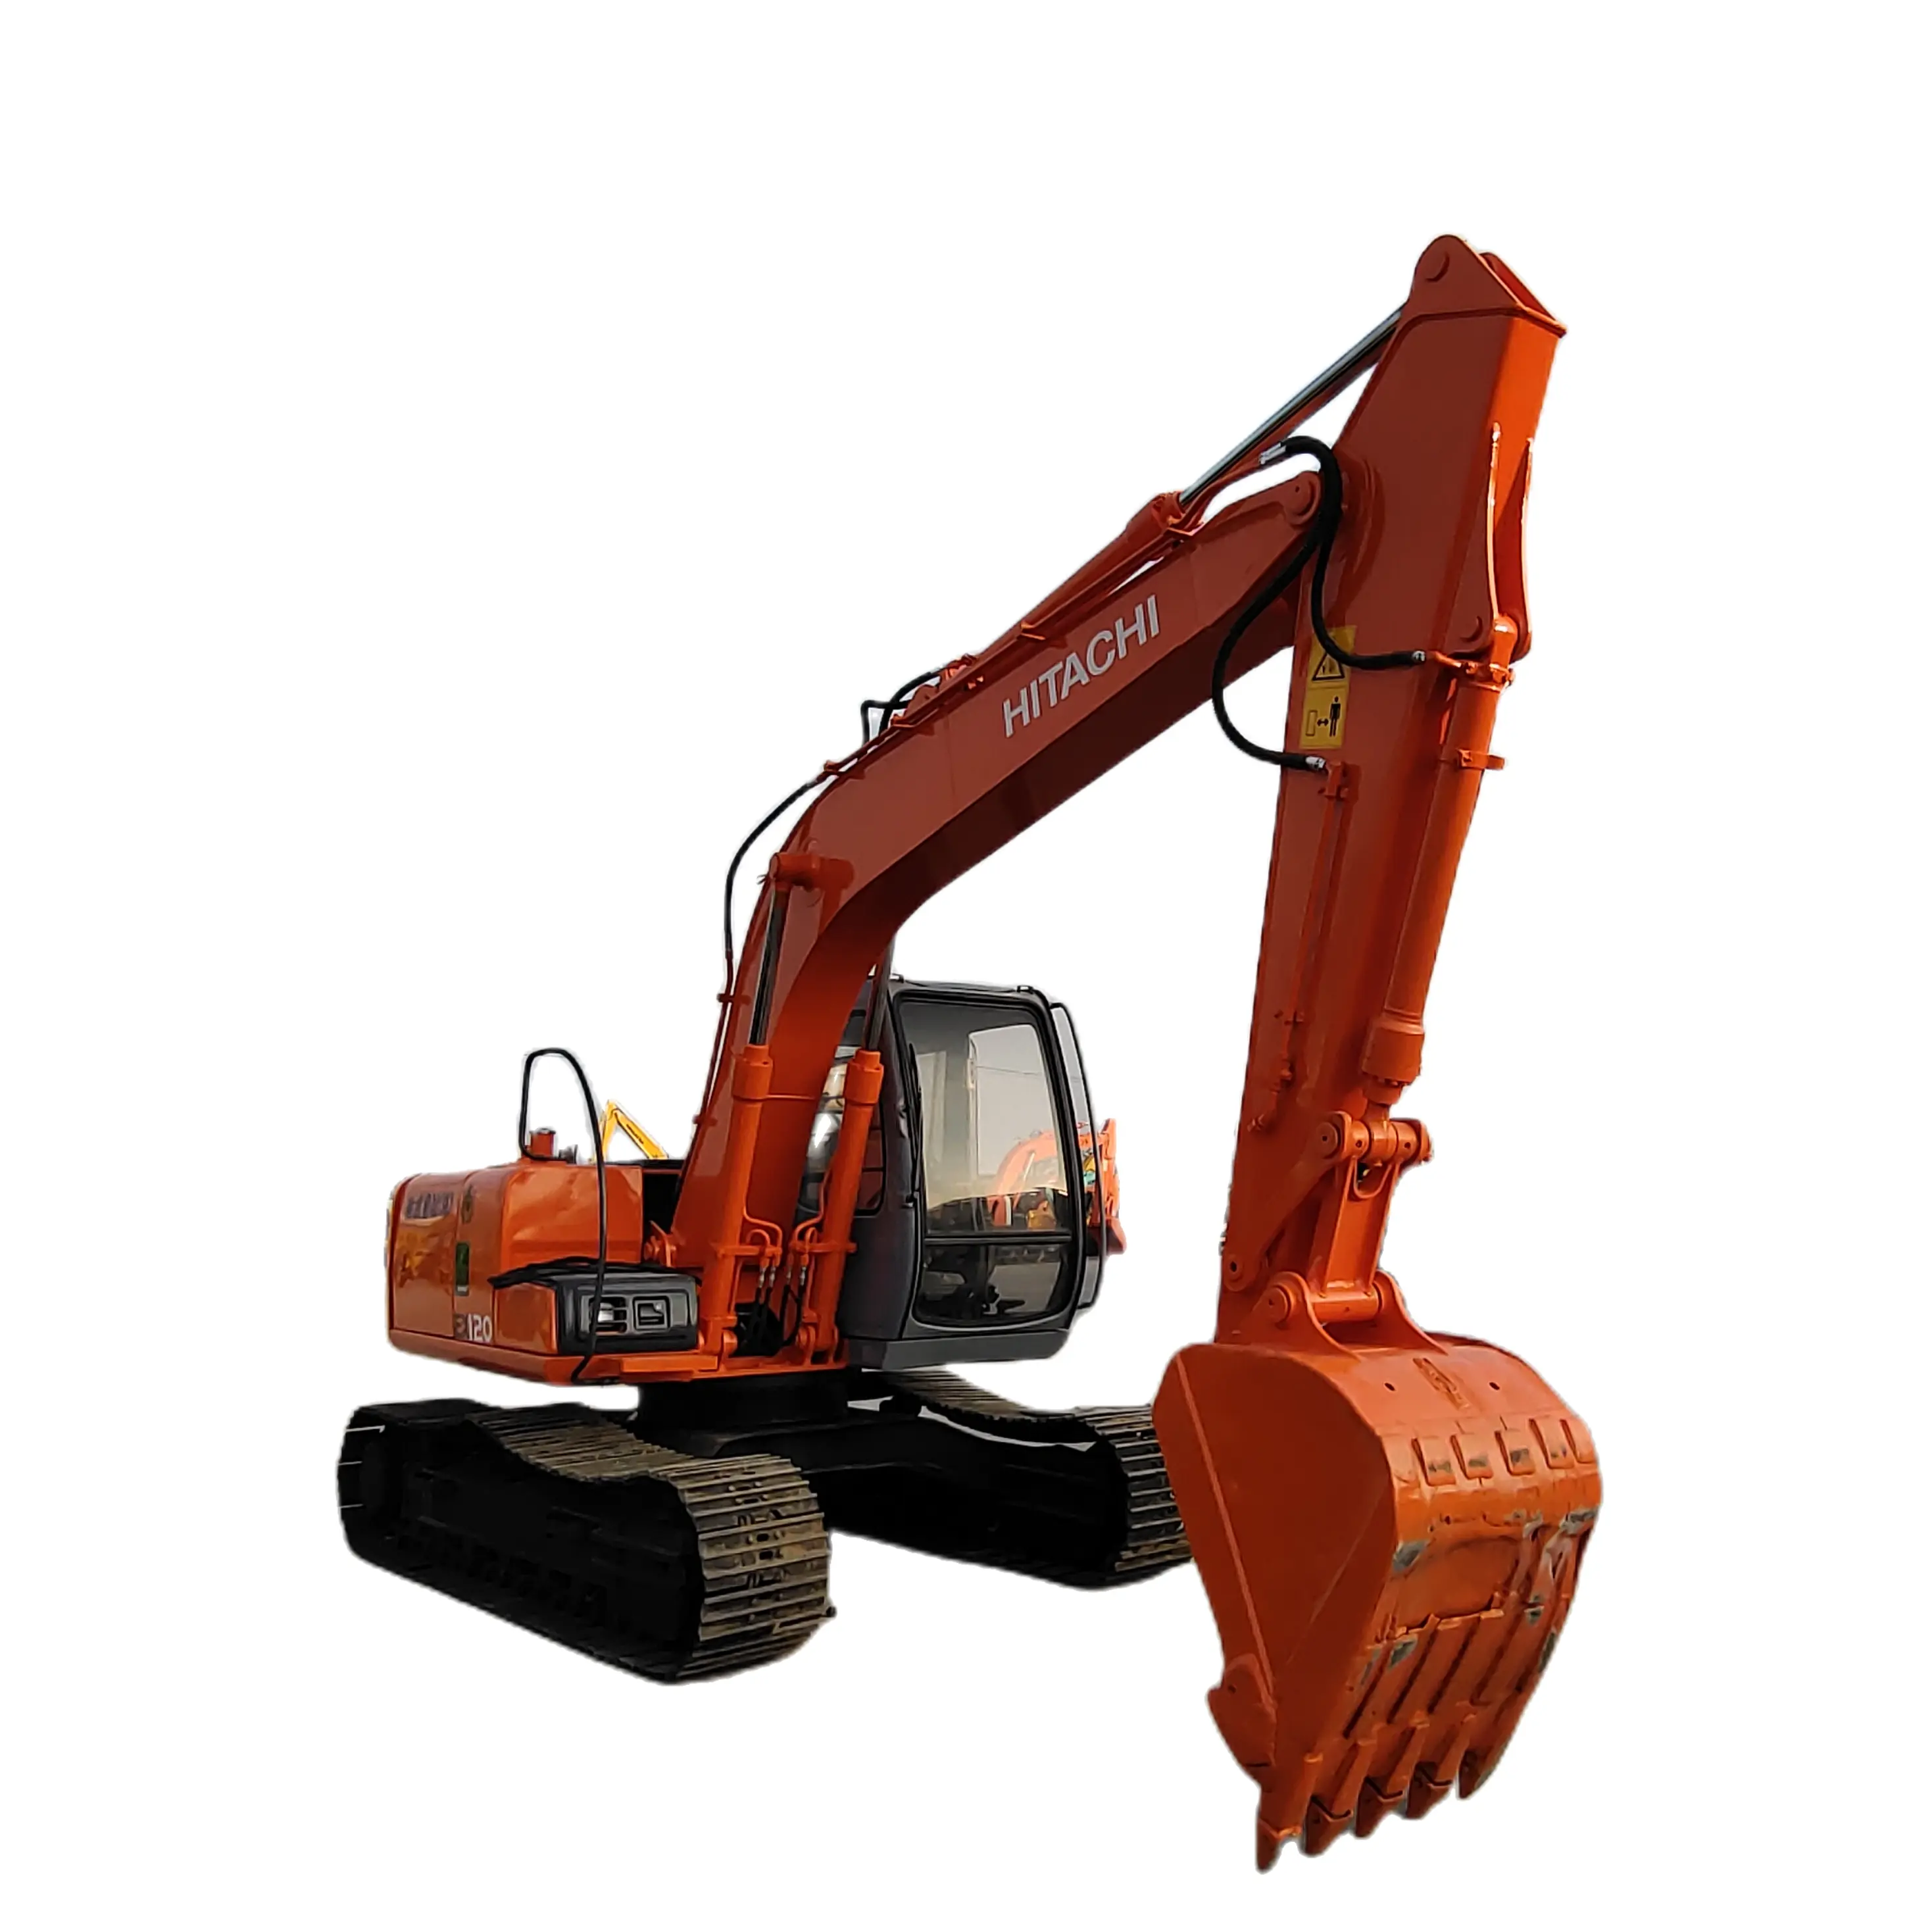 Escavatore usato di alta qualità Hitachi ZX120 ZX200 ZX350H 35ton cingolato medio basso orario di lavoro prezzo basso in vendita